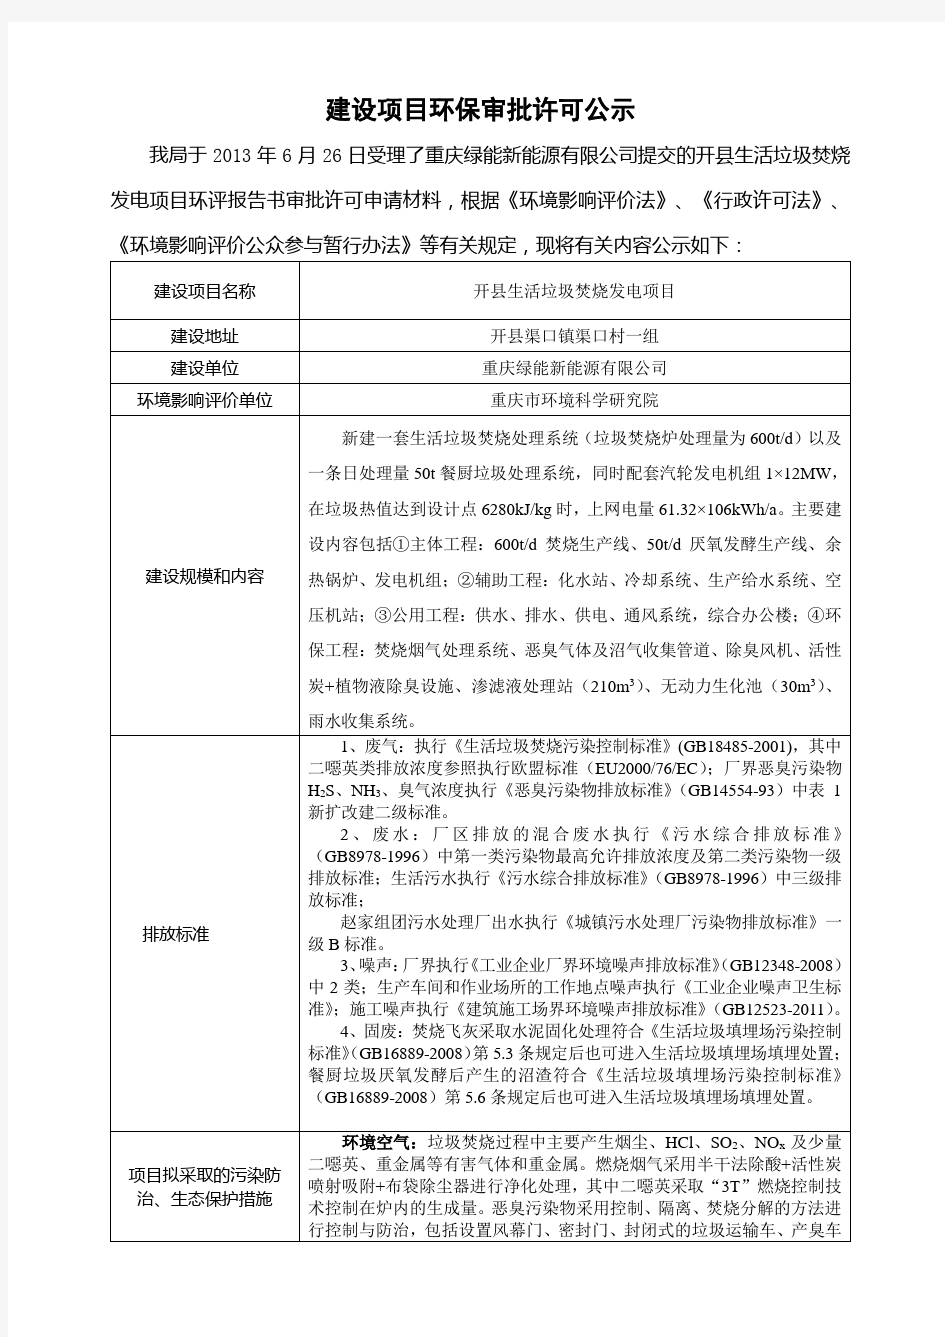 重庆开县生活垃圾焚烧发电项目环境影响评价报告书